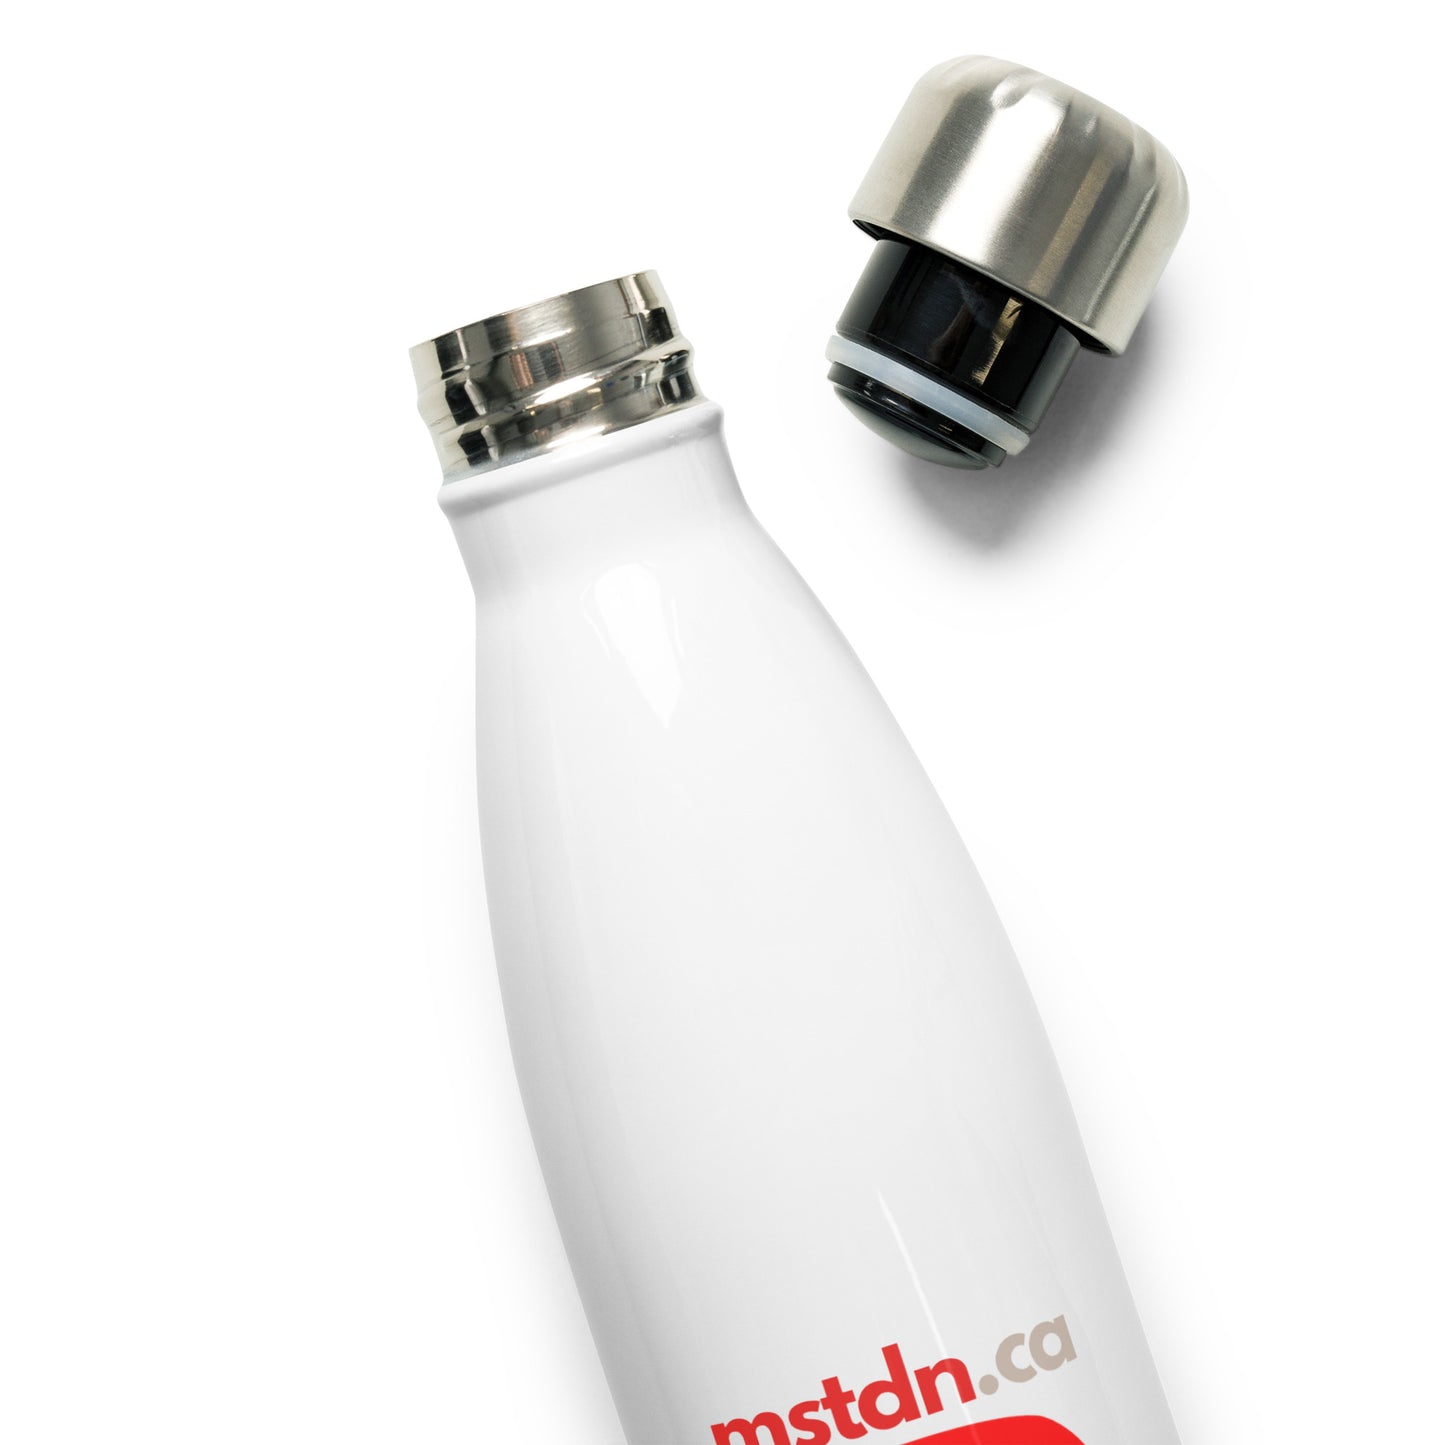 mstdn.ca Stainless Steel Water Bottle